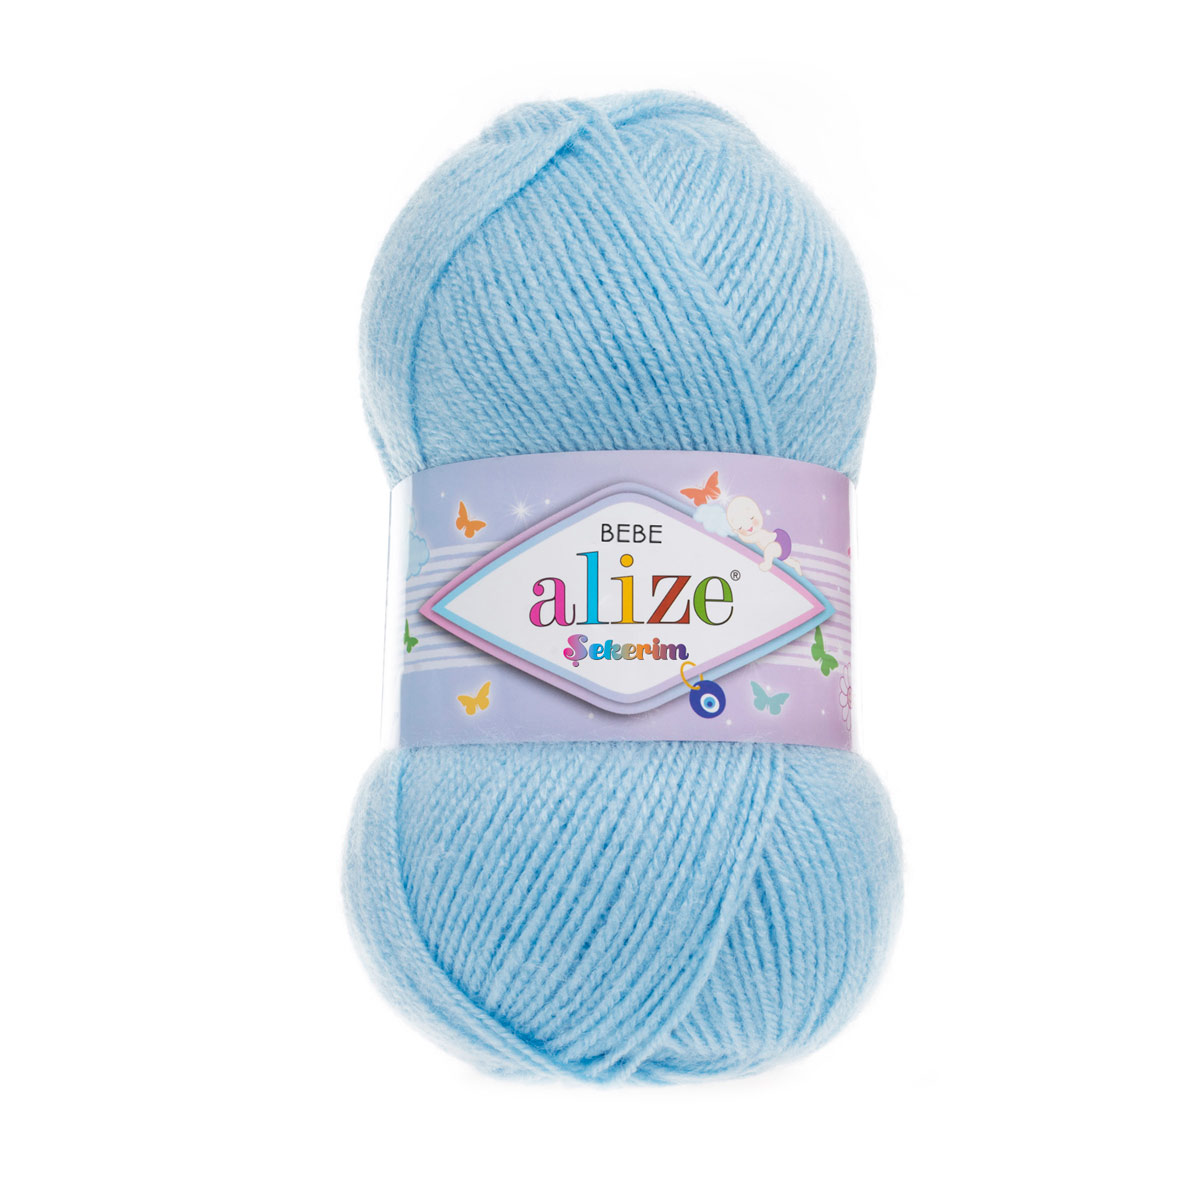 Пряжа для вязания Alize sekerim bebe 100 гр 320 м акрил для мягких игрушек 40 голубой 5 мотков - фото 4